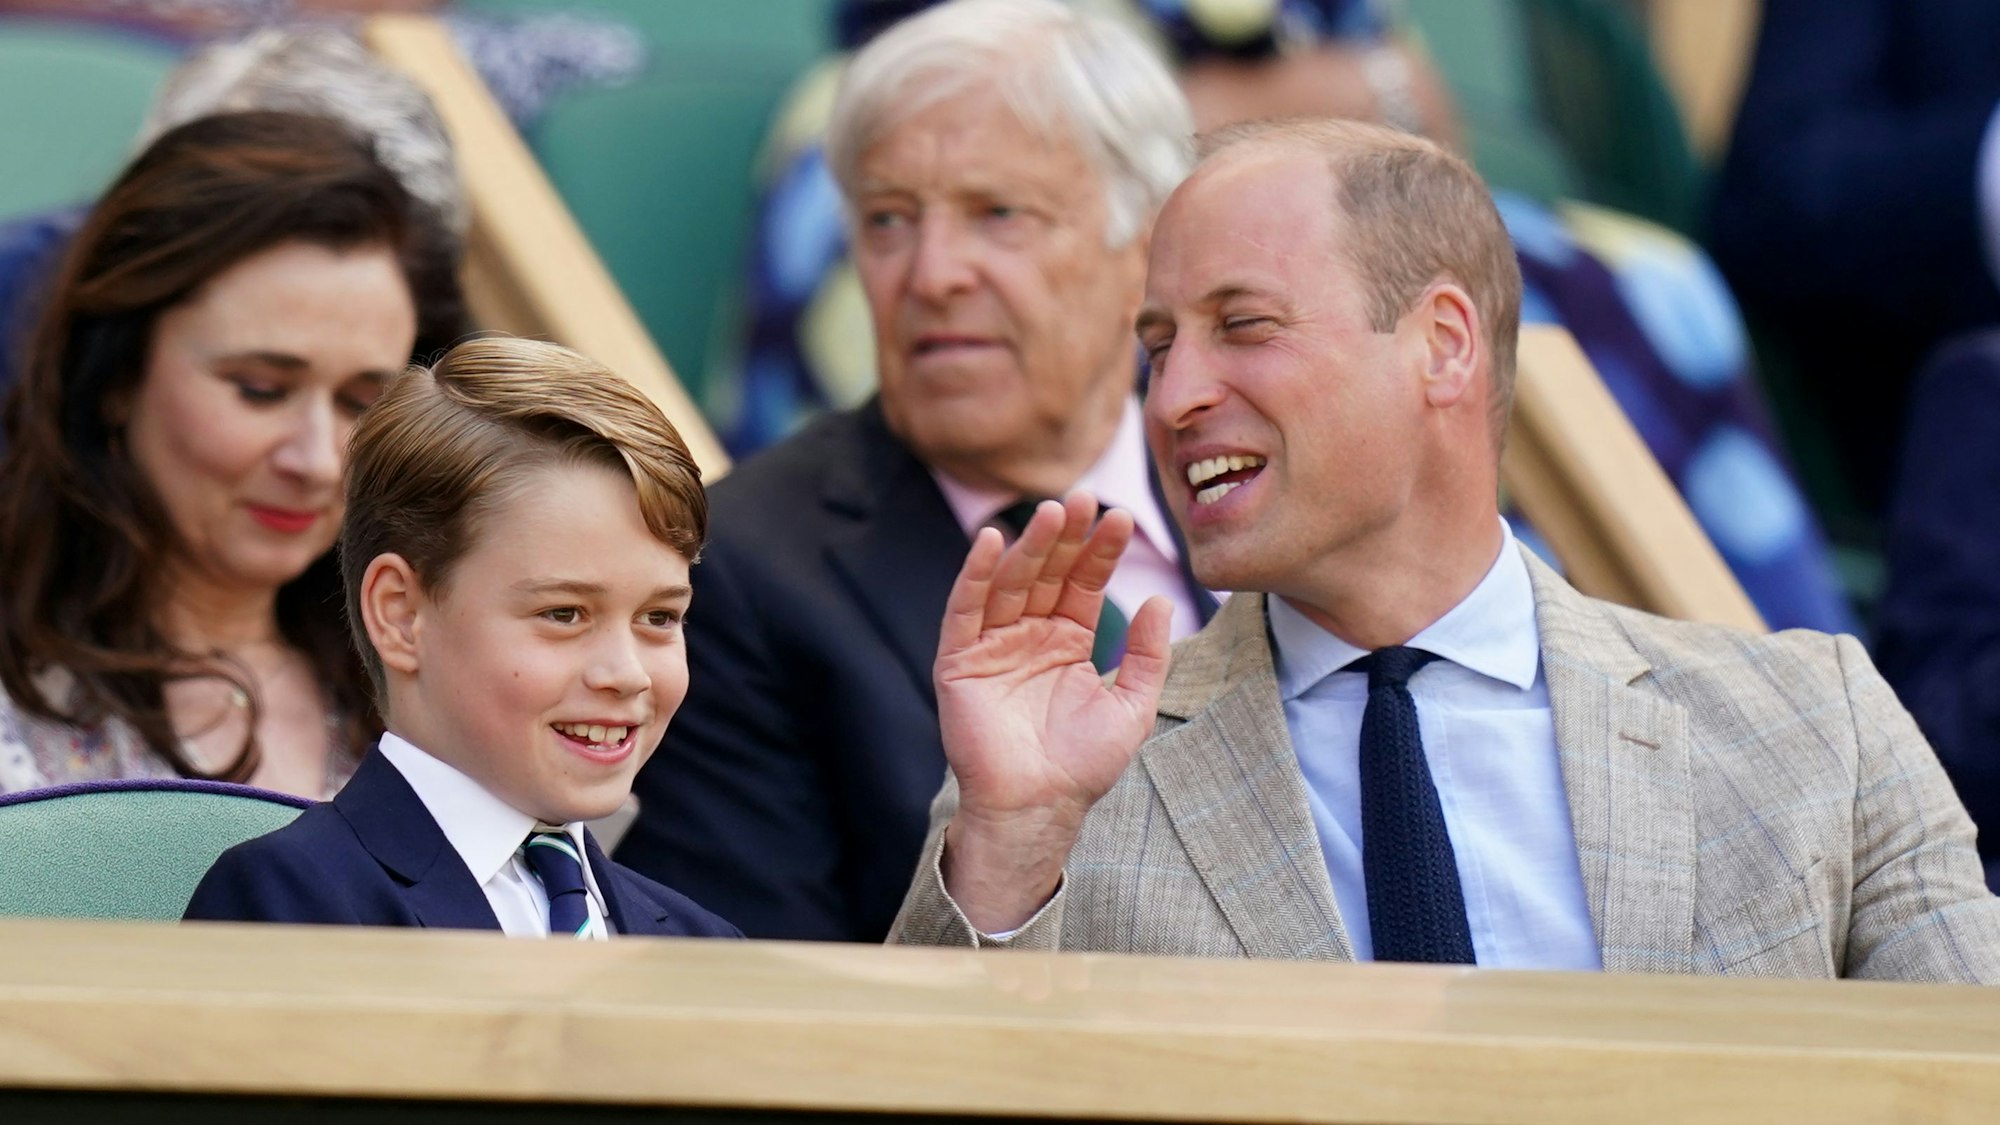 Prinz William, Herzog von Cambridge, unterhält sich mit Prinz George in der königlichen Loge.